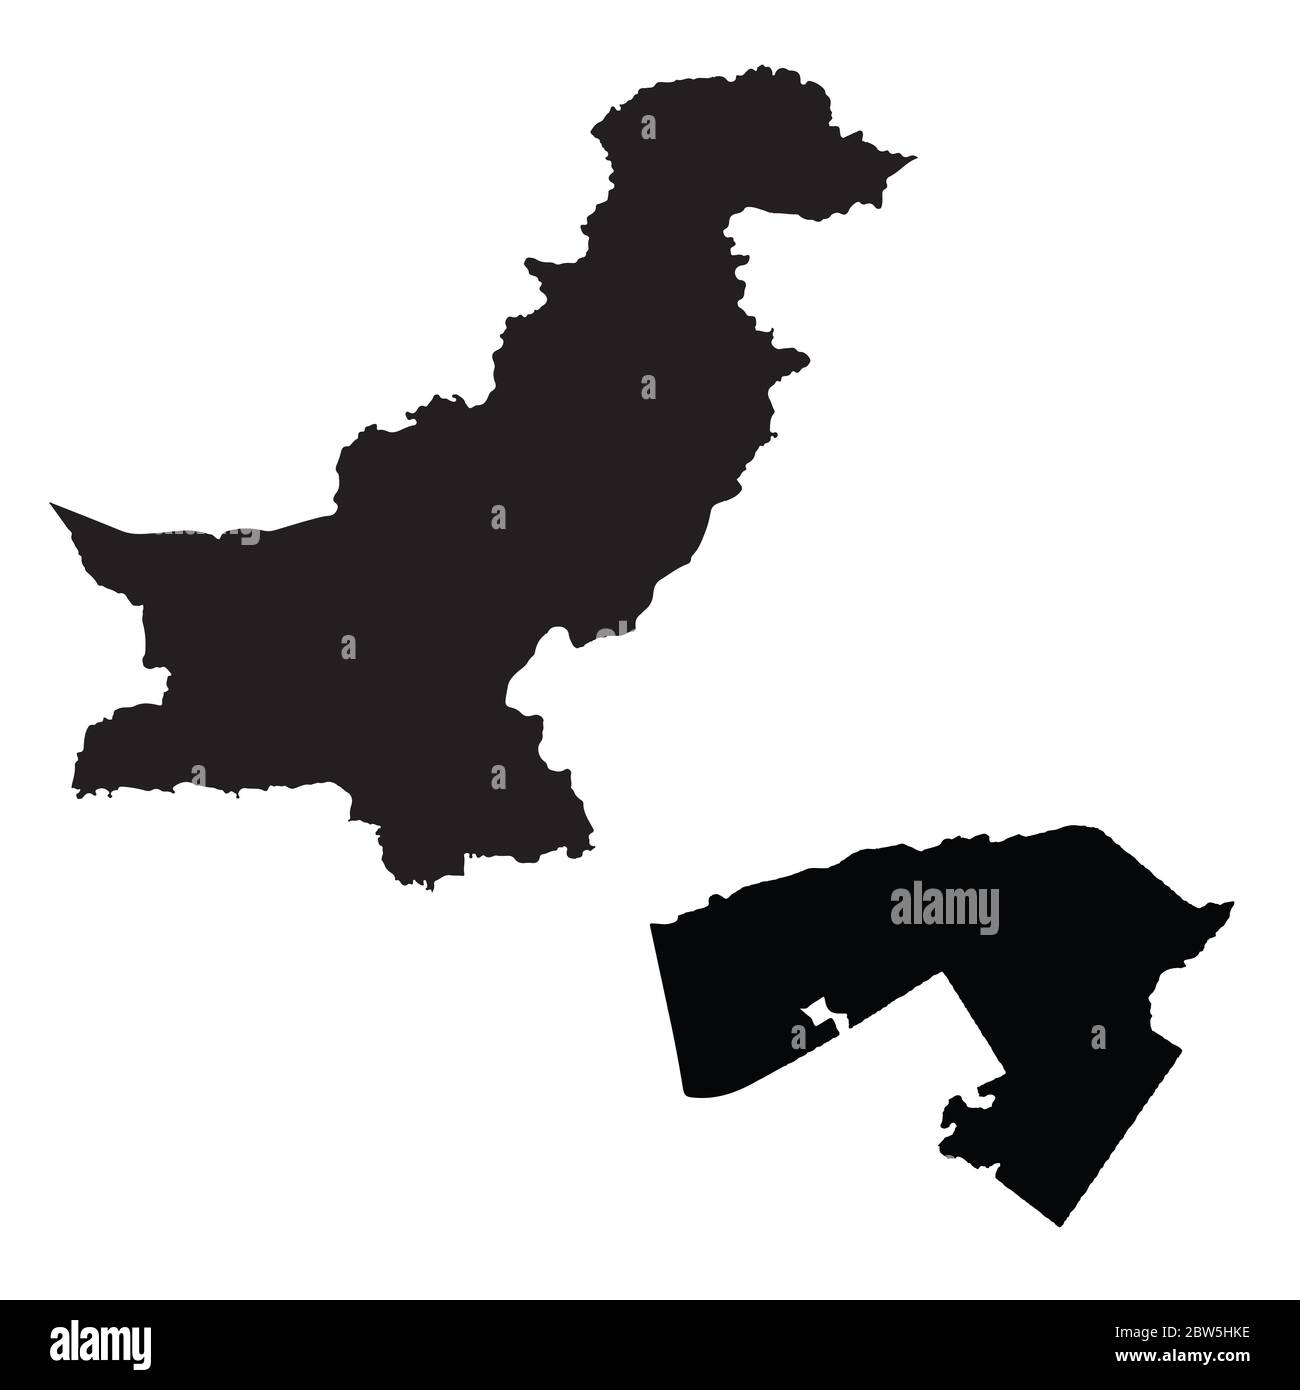 Carte vectorielle Pakistan et Islamabad. Pays et capitale. Illustration de vecteur isolé. Noir sur fond blanc. Illustration de l'EPS 10. Illustration de Vecteur